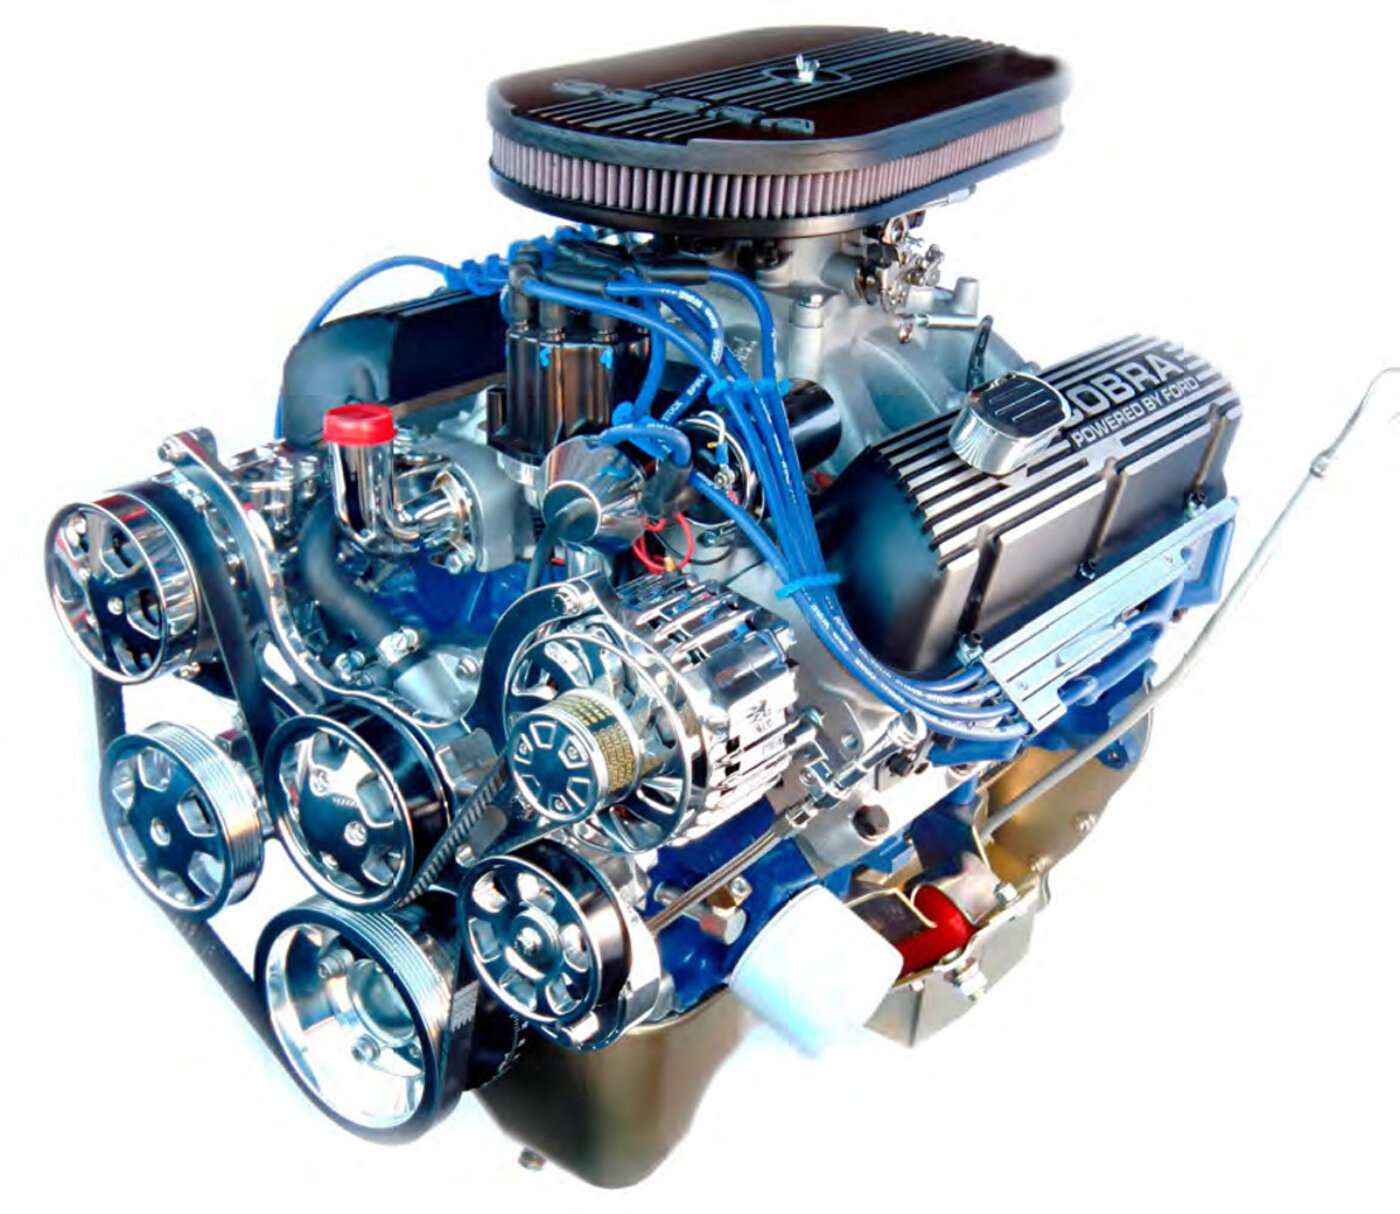 						Engine Factory Ford Cobra Engine
			